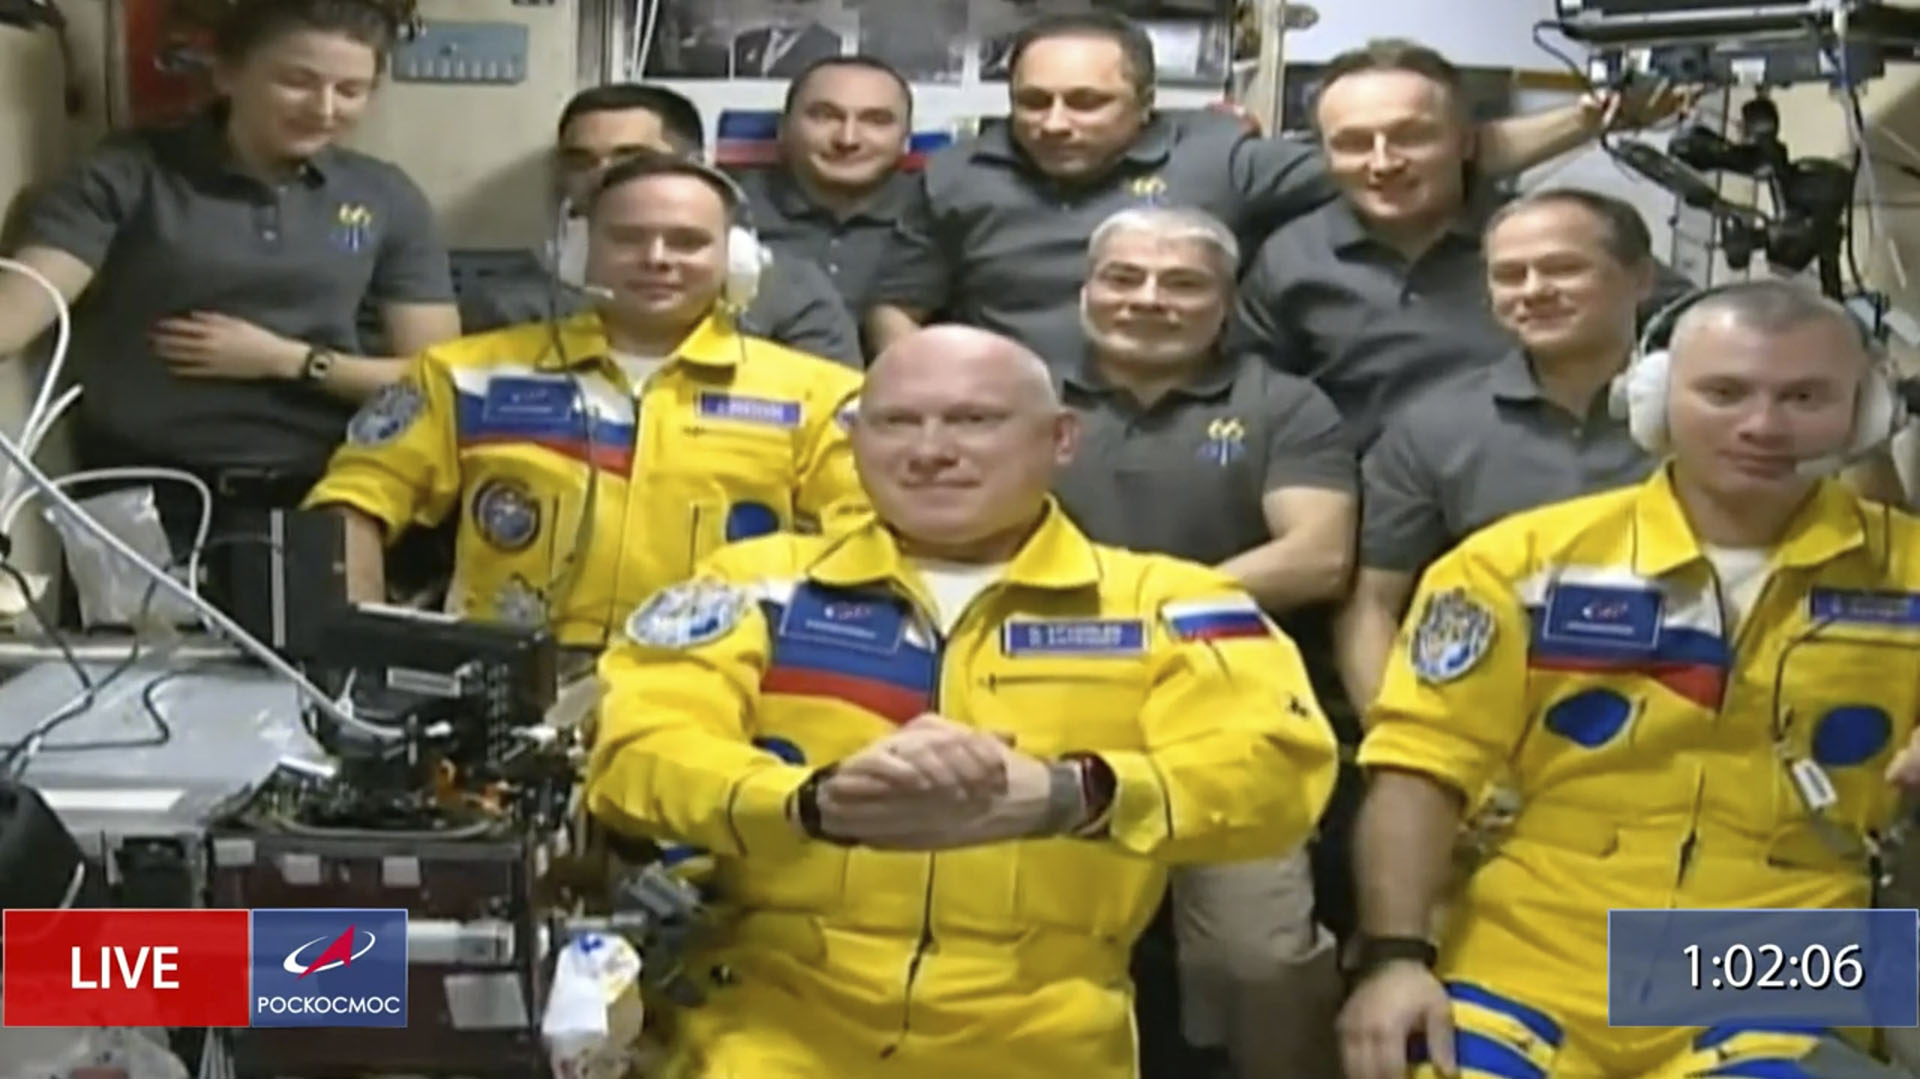 Tres cosmonautas rusos arribaron a la Estación Espacial Internacional vestidos de azul y amarillo